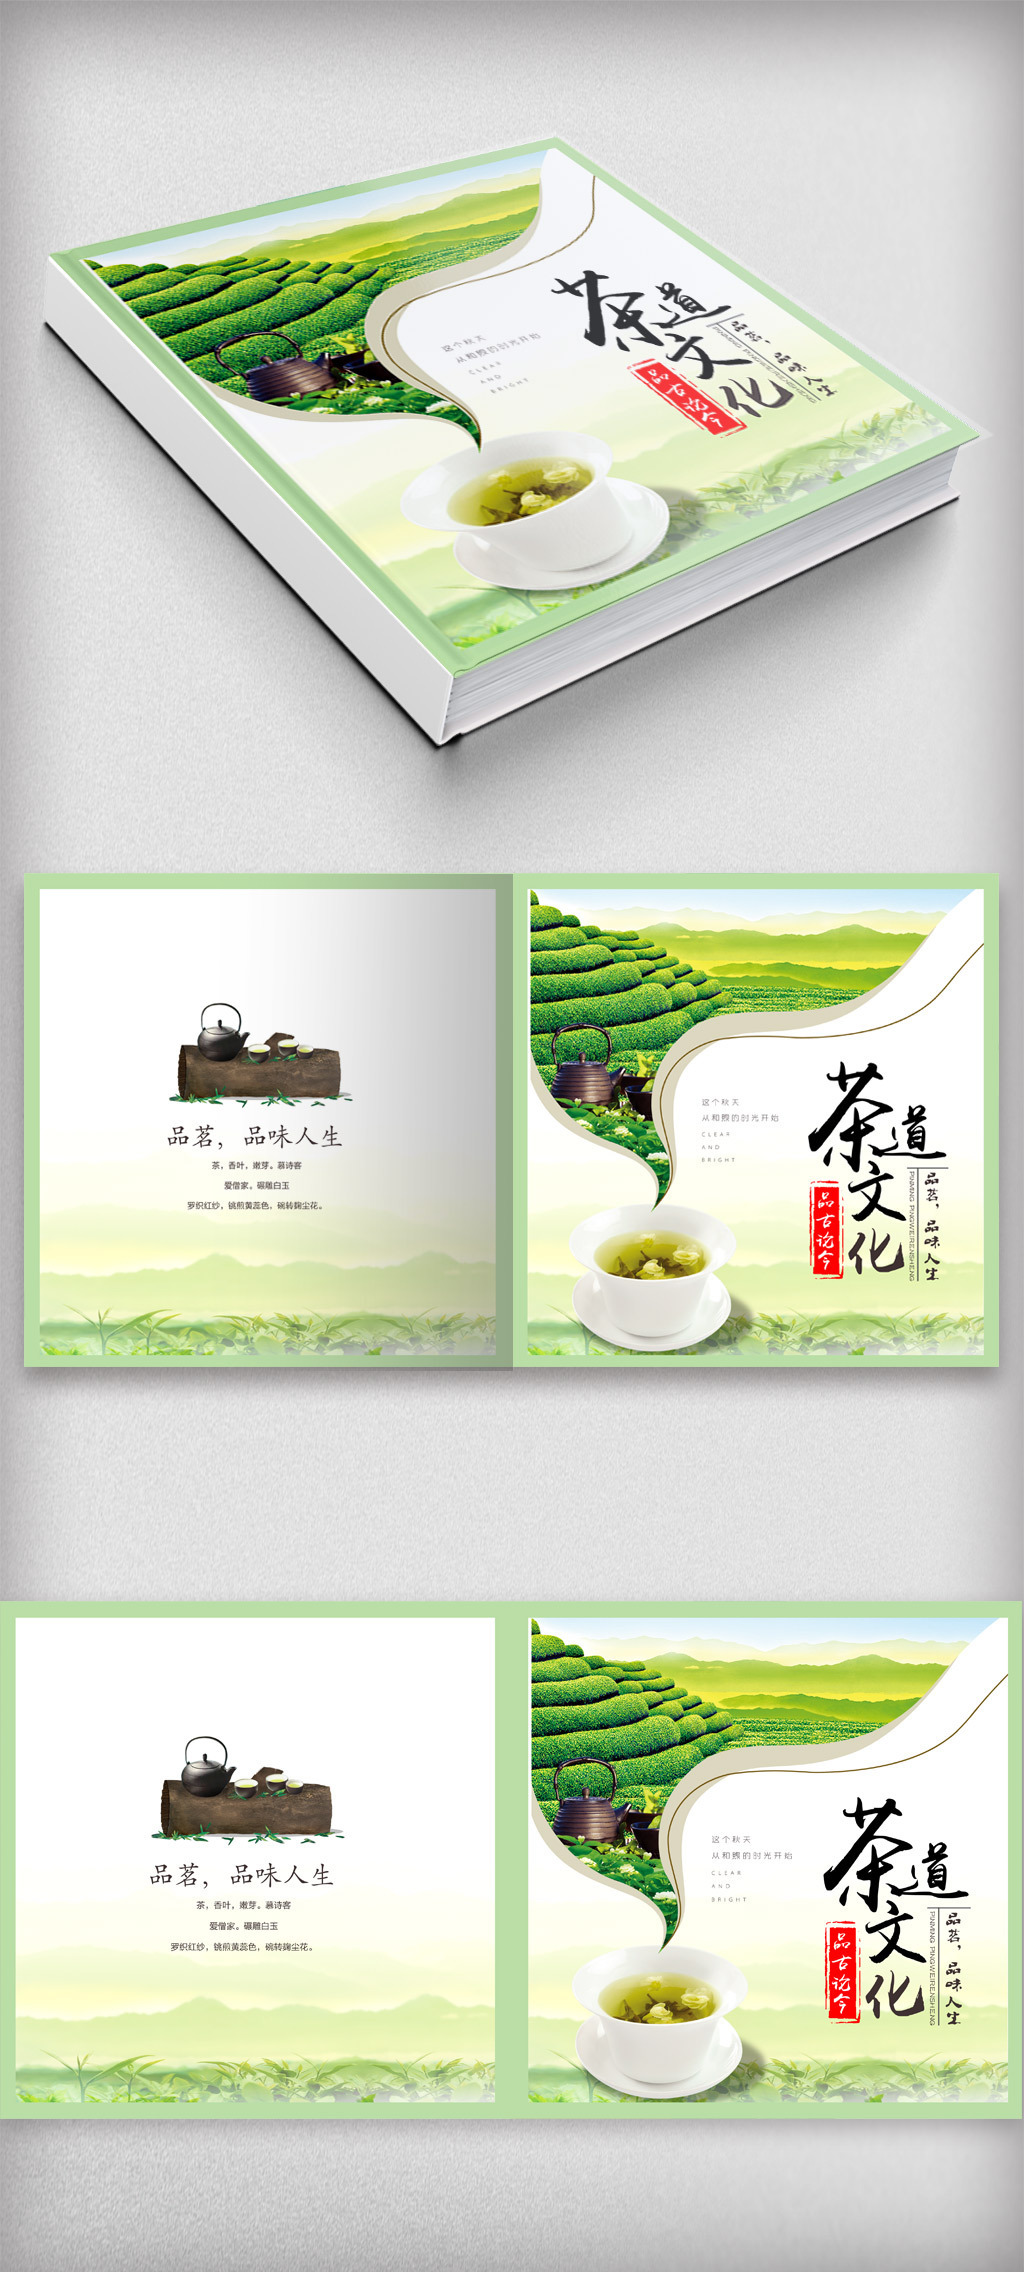 原创中国风茶文化茶叶画册封面设计.psd-版权可商用